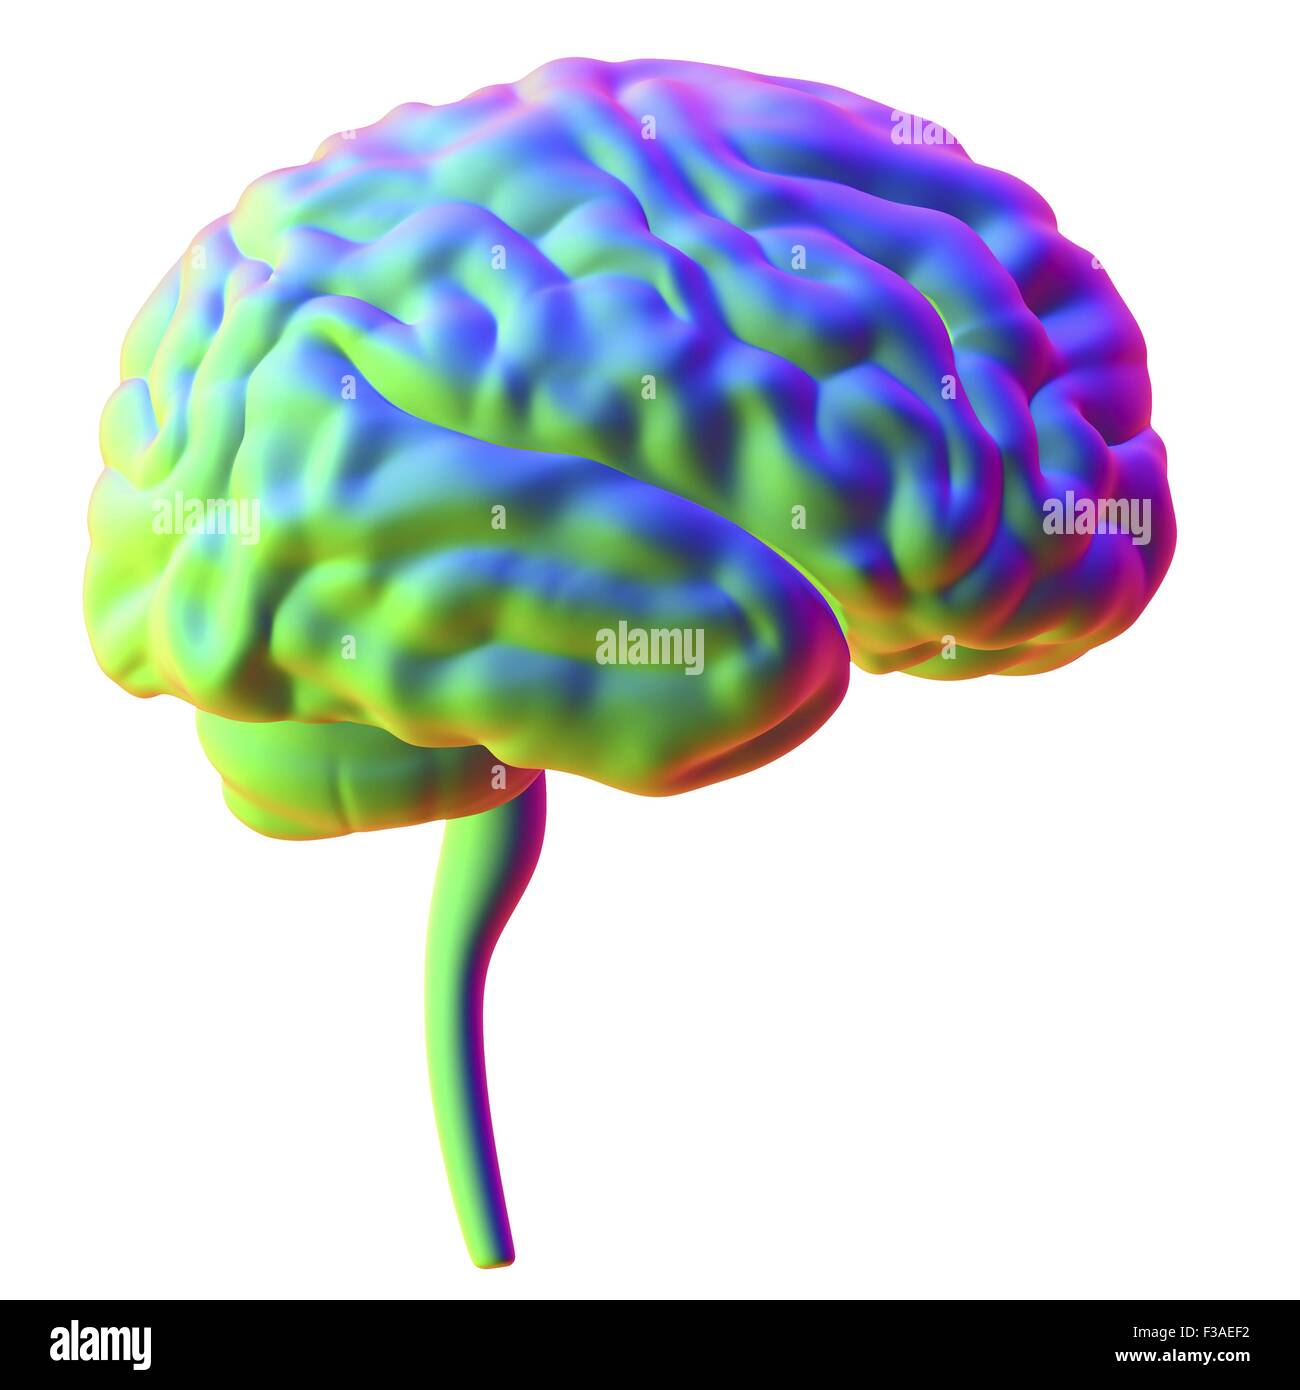 Computer illustrazione del cervello umano, visto dal lato. Foto Stock